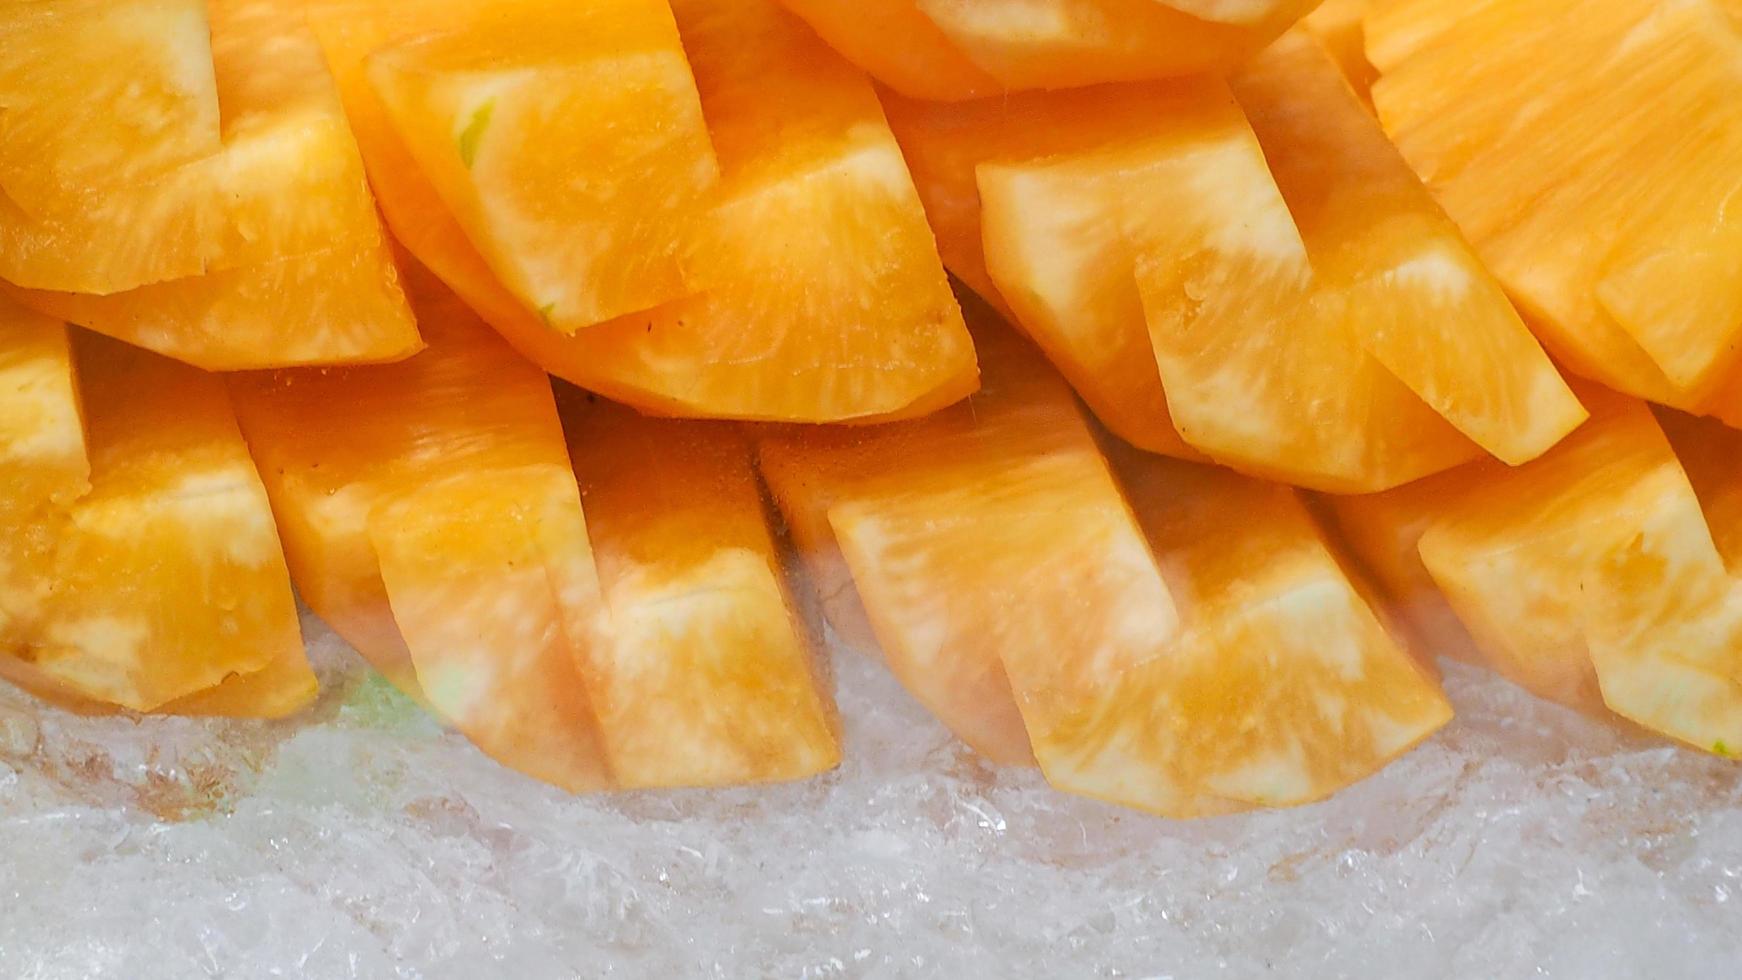 abacaxi laranja ou amarelo cortado em gelo picado. fruta tropical. lanche saudável. enzima bromelina extraída do abacaxi. fonte de enzima da natureza ajuda a digerir proteínas. comida de rua na Tailândia. foto